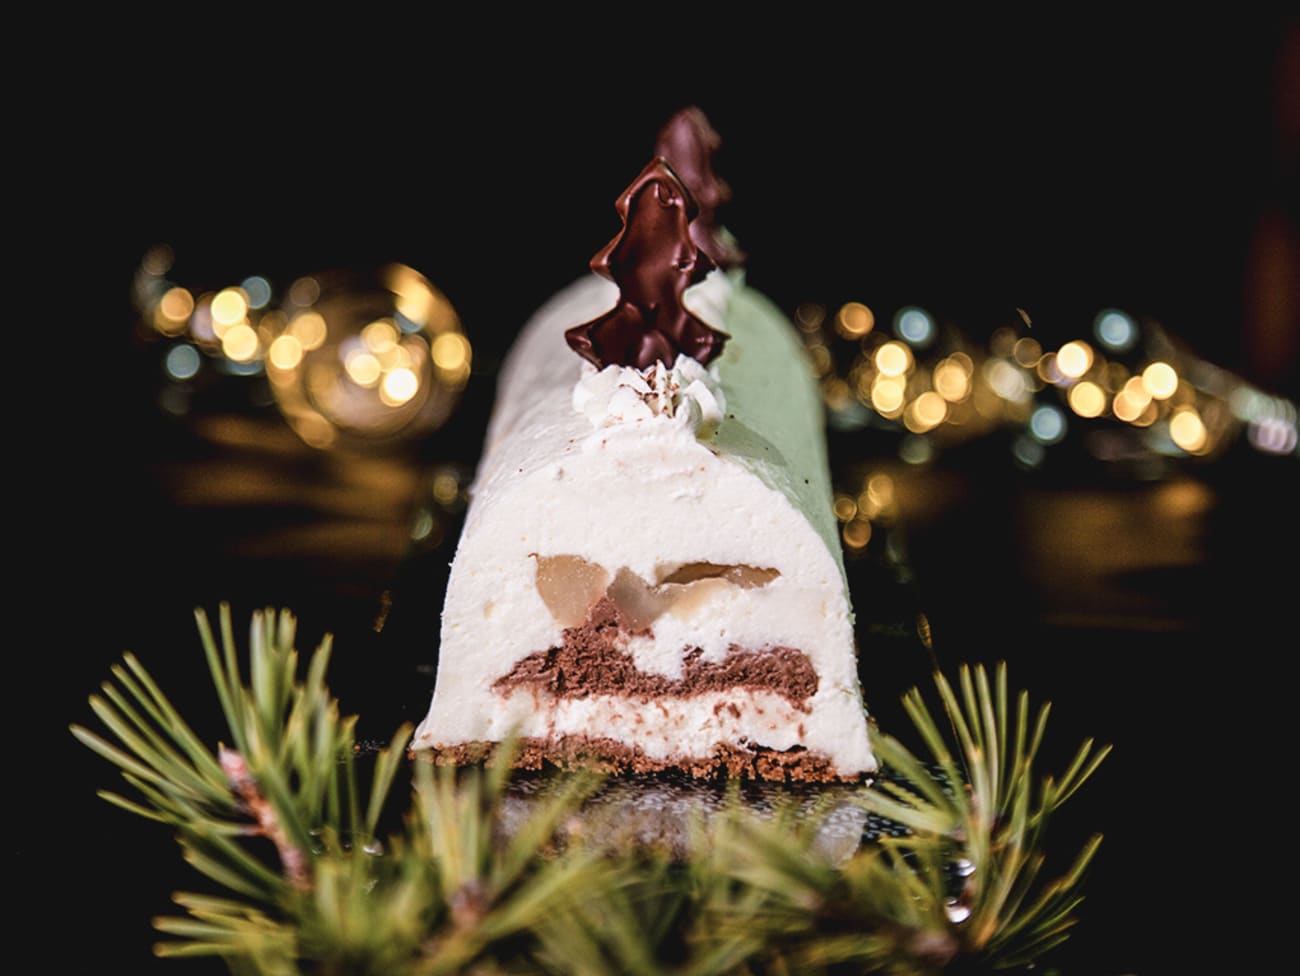 Bûche de Noël chocolat poire de Elise au pays des merveilles - Cookpad